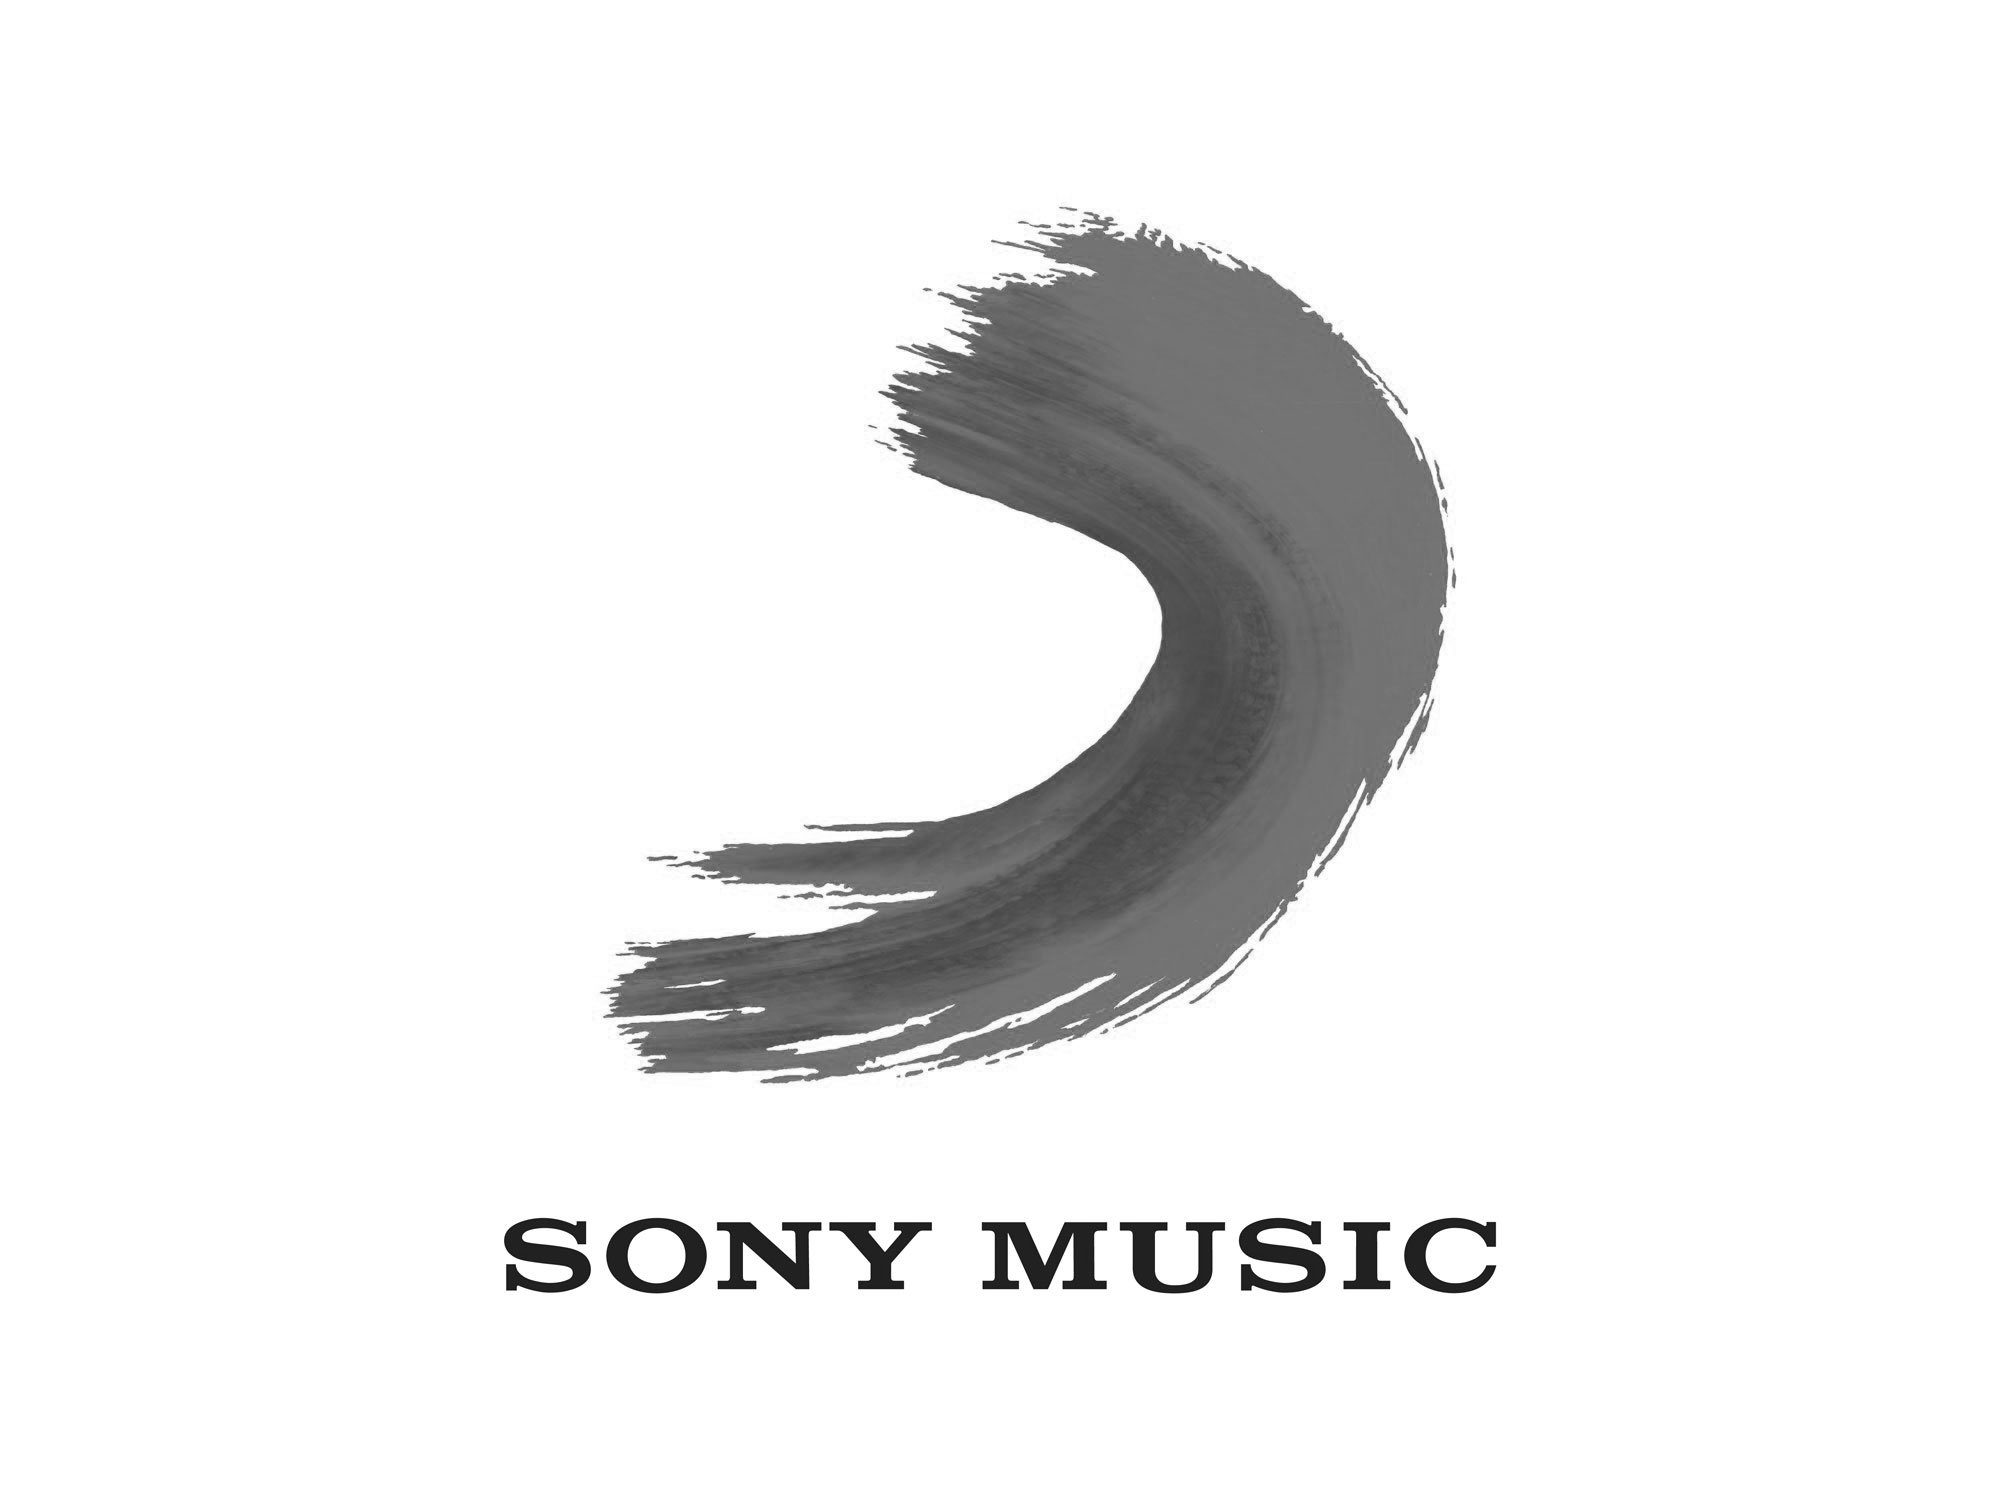 Logo de Sony Music